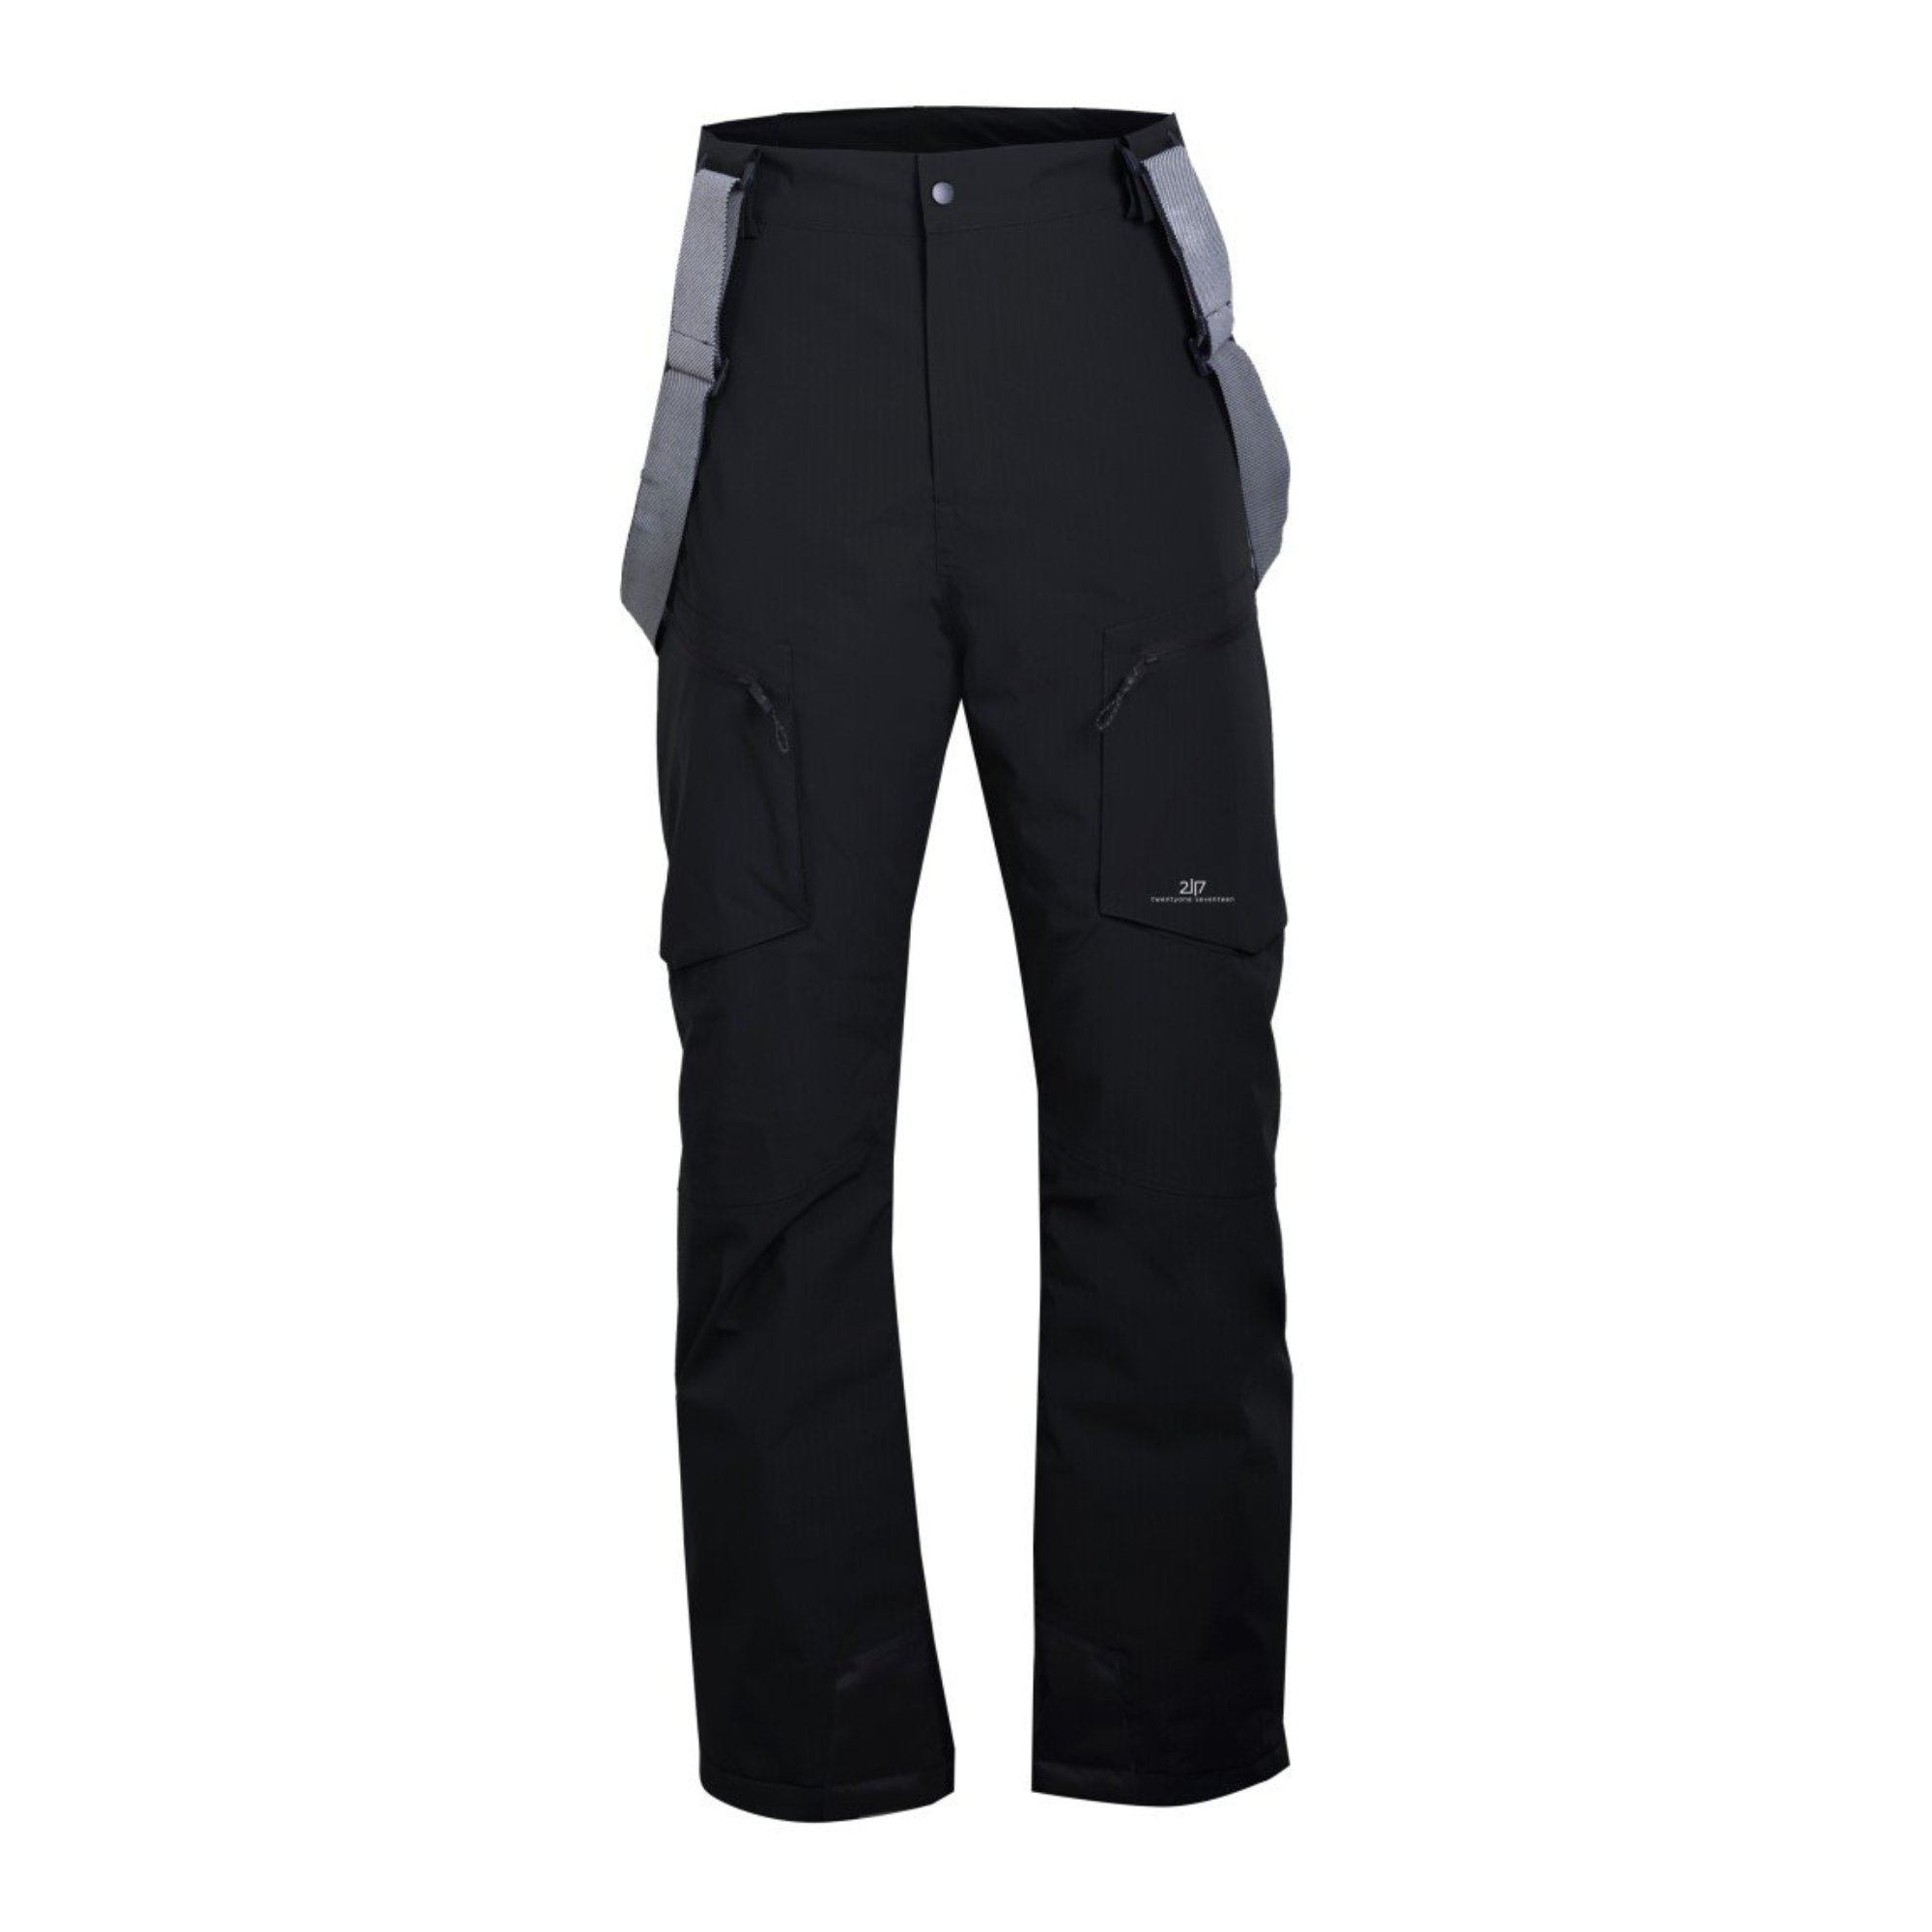 NYHEM - ECO pánské lyžařské kalhoty, černá